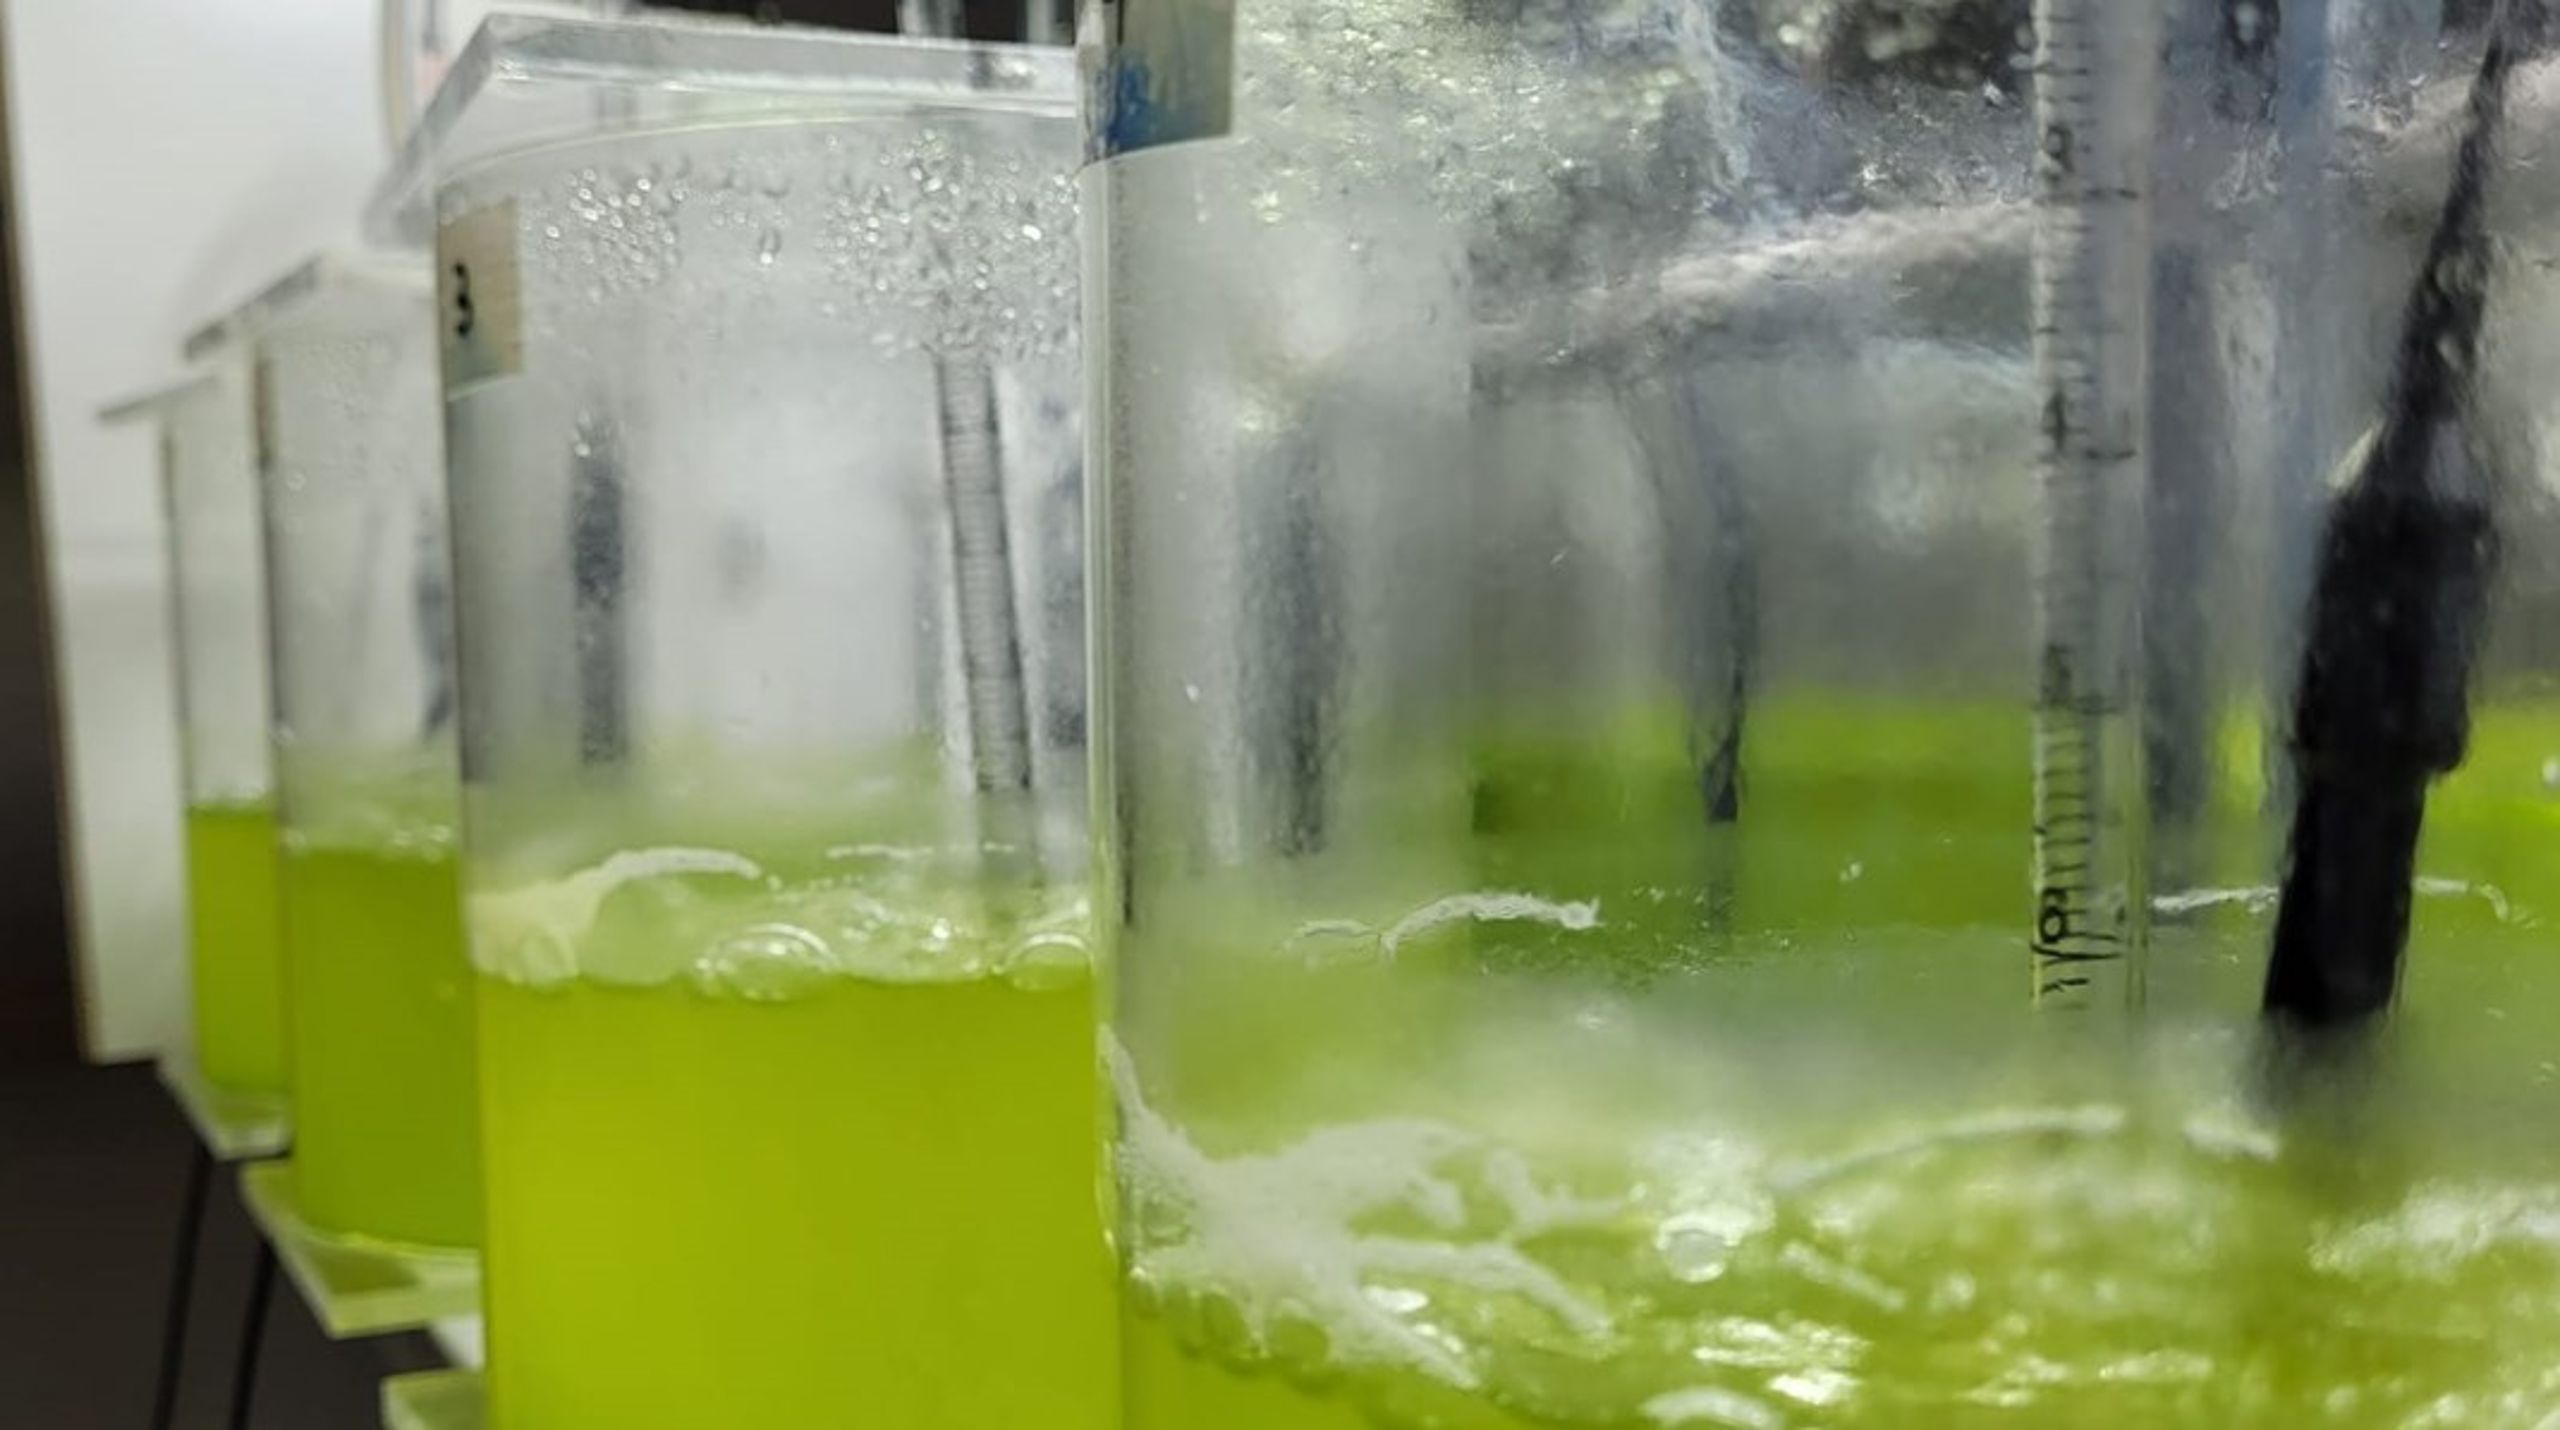 Mens fortidens alkymister forsøkte å lage gull av gråstein, er vår oppgave å utnytte det grønne gullet i mikroalgene. For oss som jobber med dette, er det liten tvil om at mikroalger er en fornybar ressurs med enorme muligheter, skriver Mari Moren og Margarida Costa, hhv. forskningsdirektør og forskningsleder ved Norsk institutt for vannforskning (NIVA).